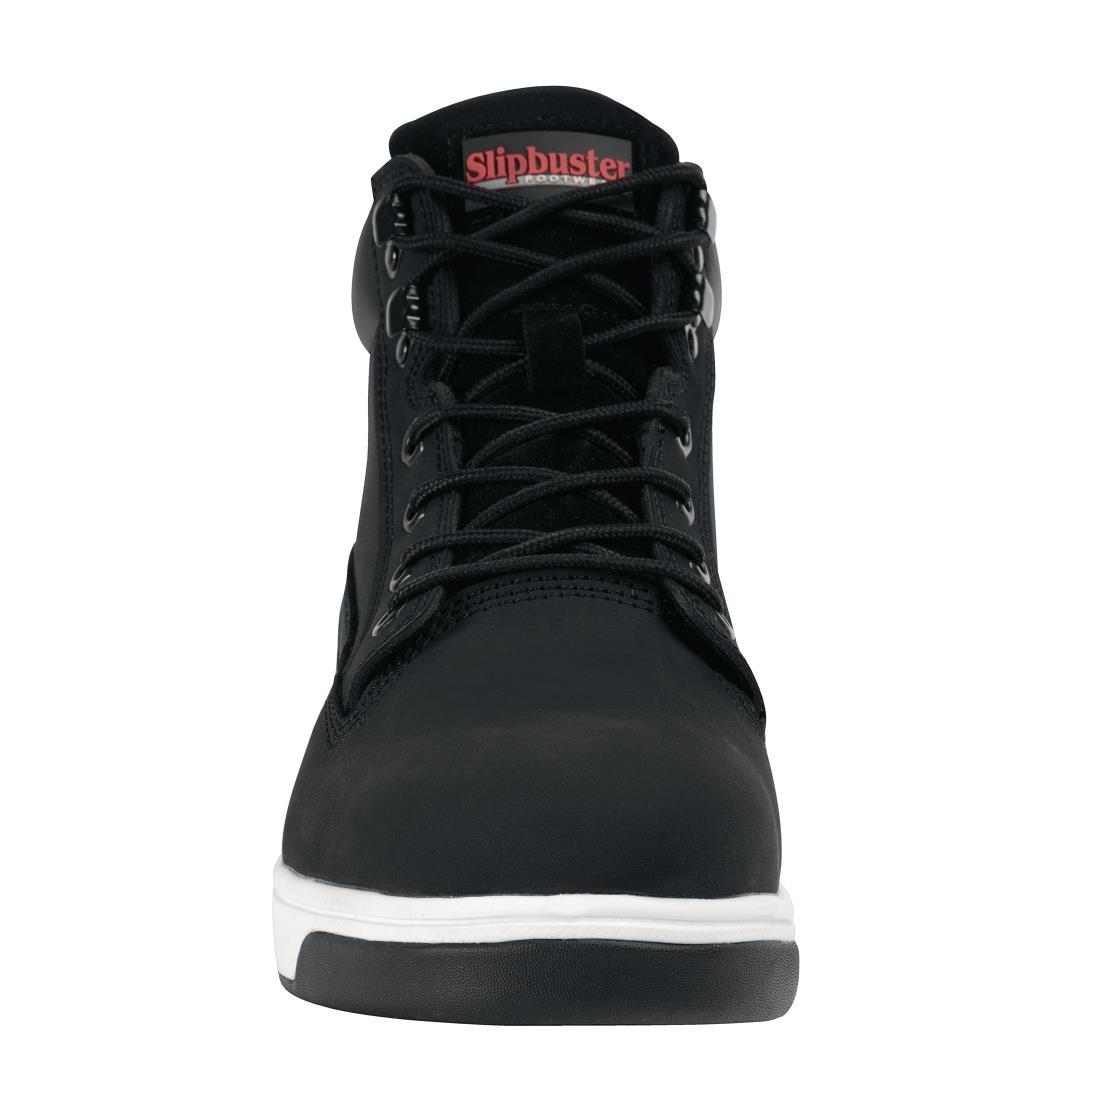 Slipbuster Sneaker Boots Black 44 - BB422-44  - 3